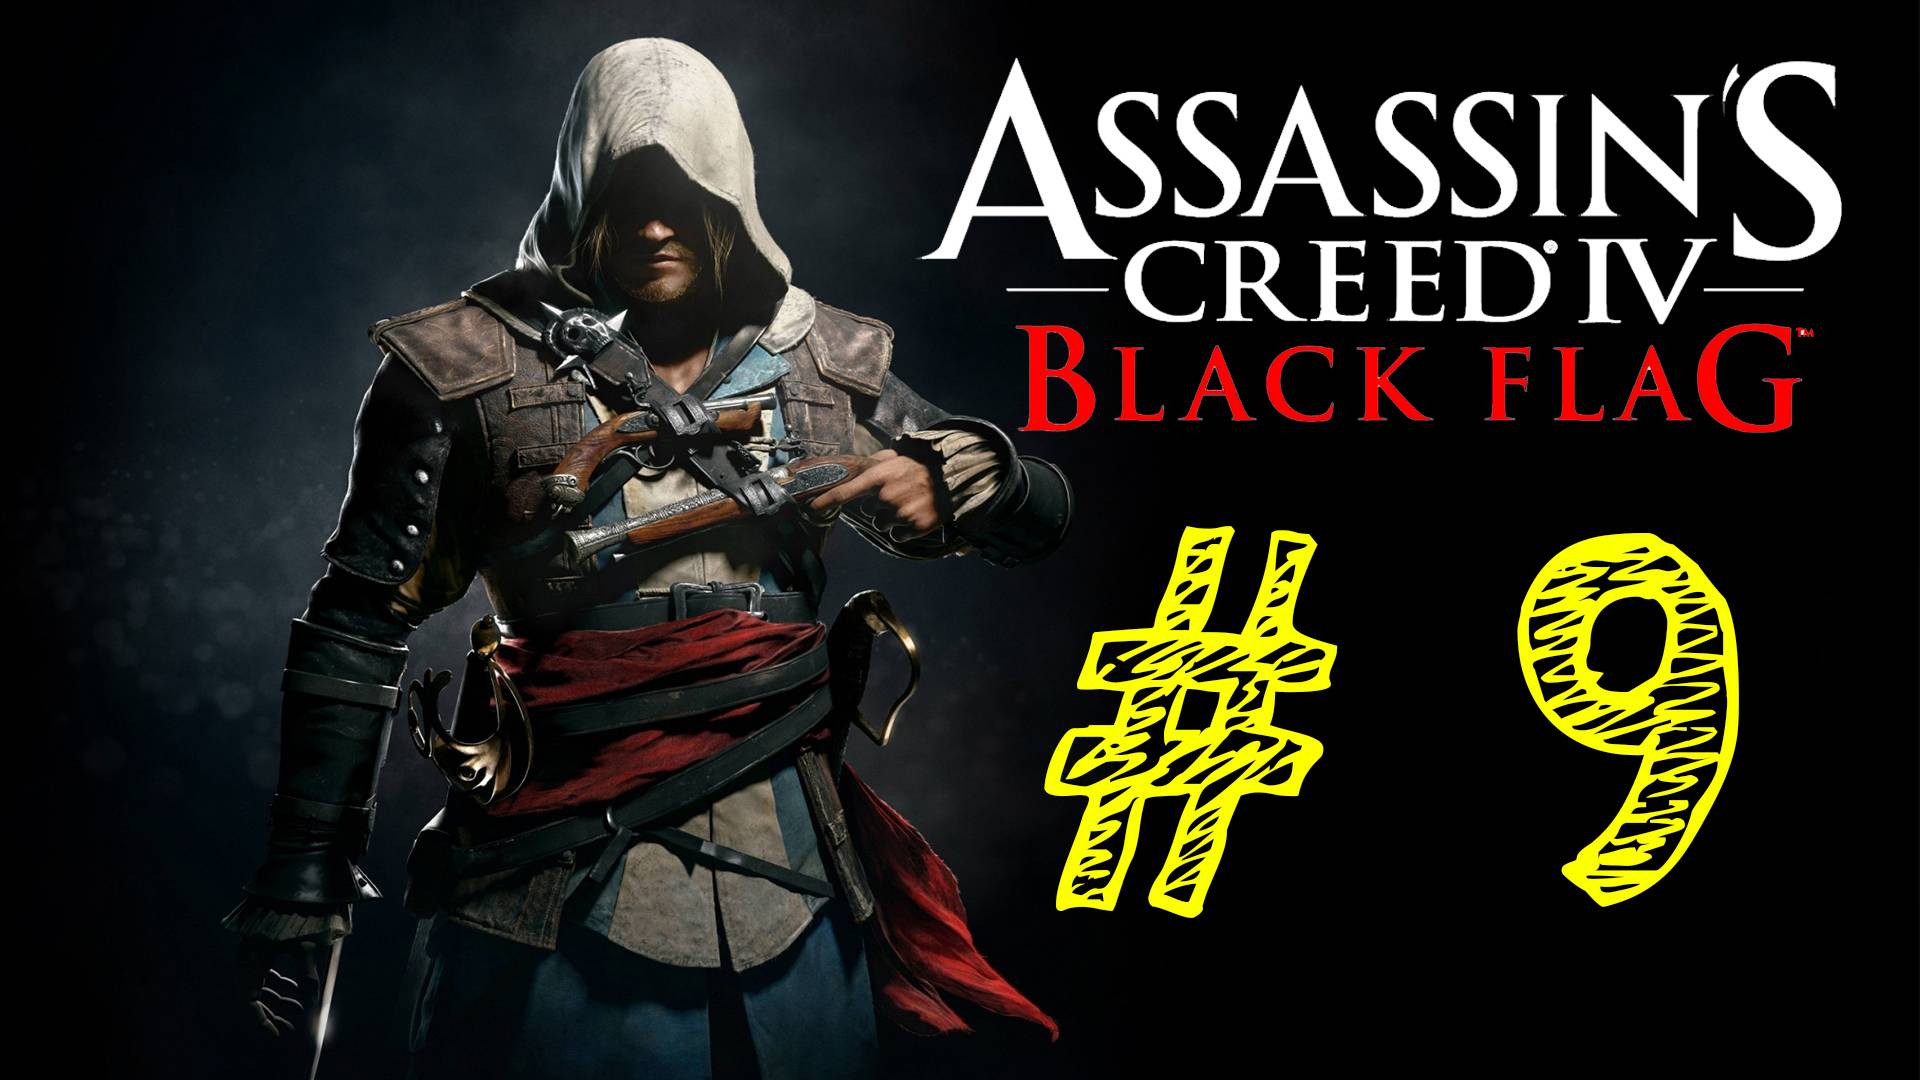 Assassin's Creed IV Black Flag. Ассасин черный флаг. 9 выпуск. ВЕК ПИРАТСТВА. Прохождение компании